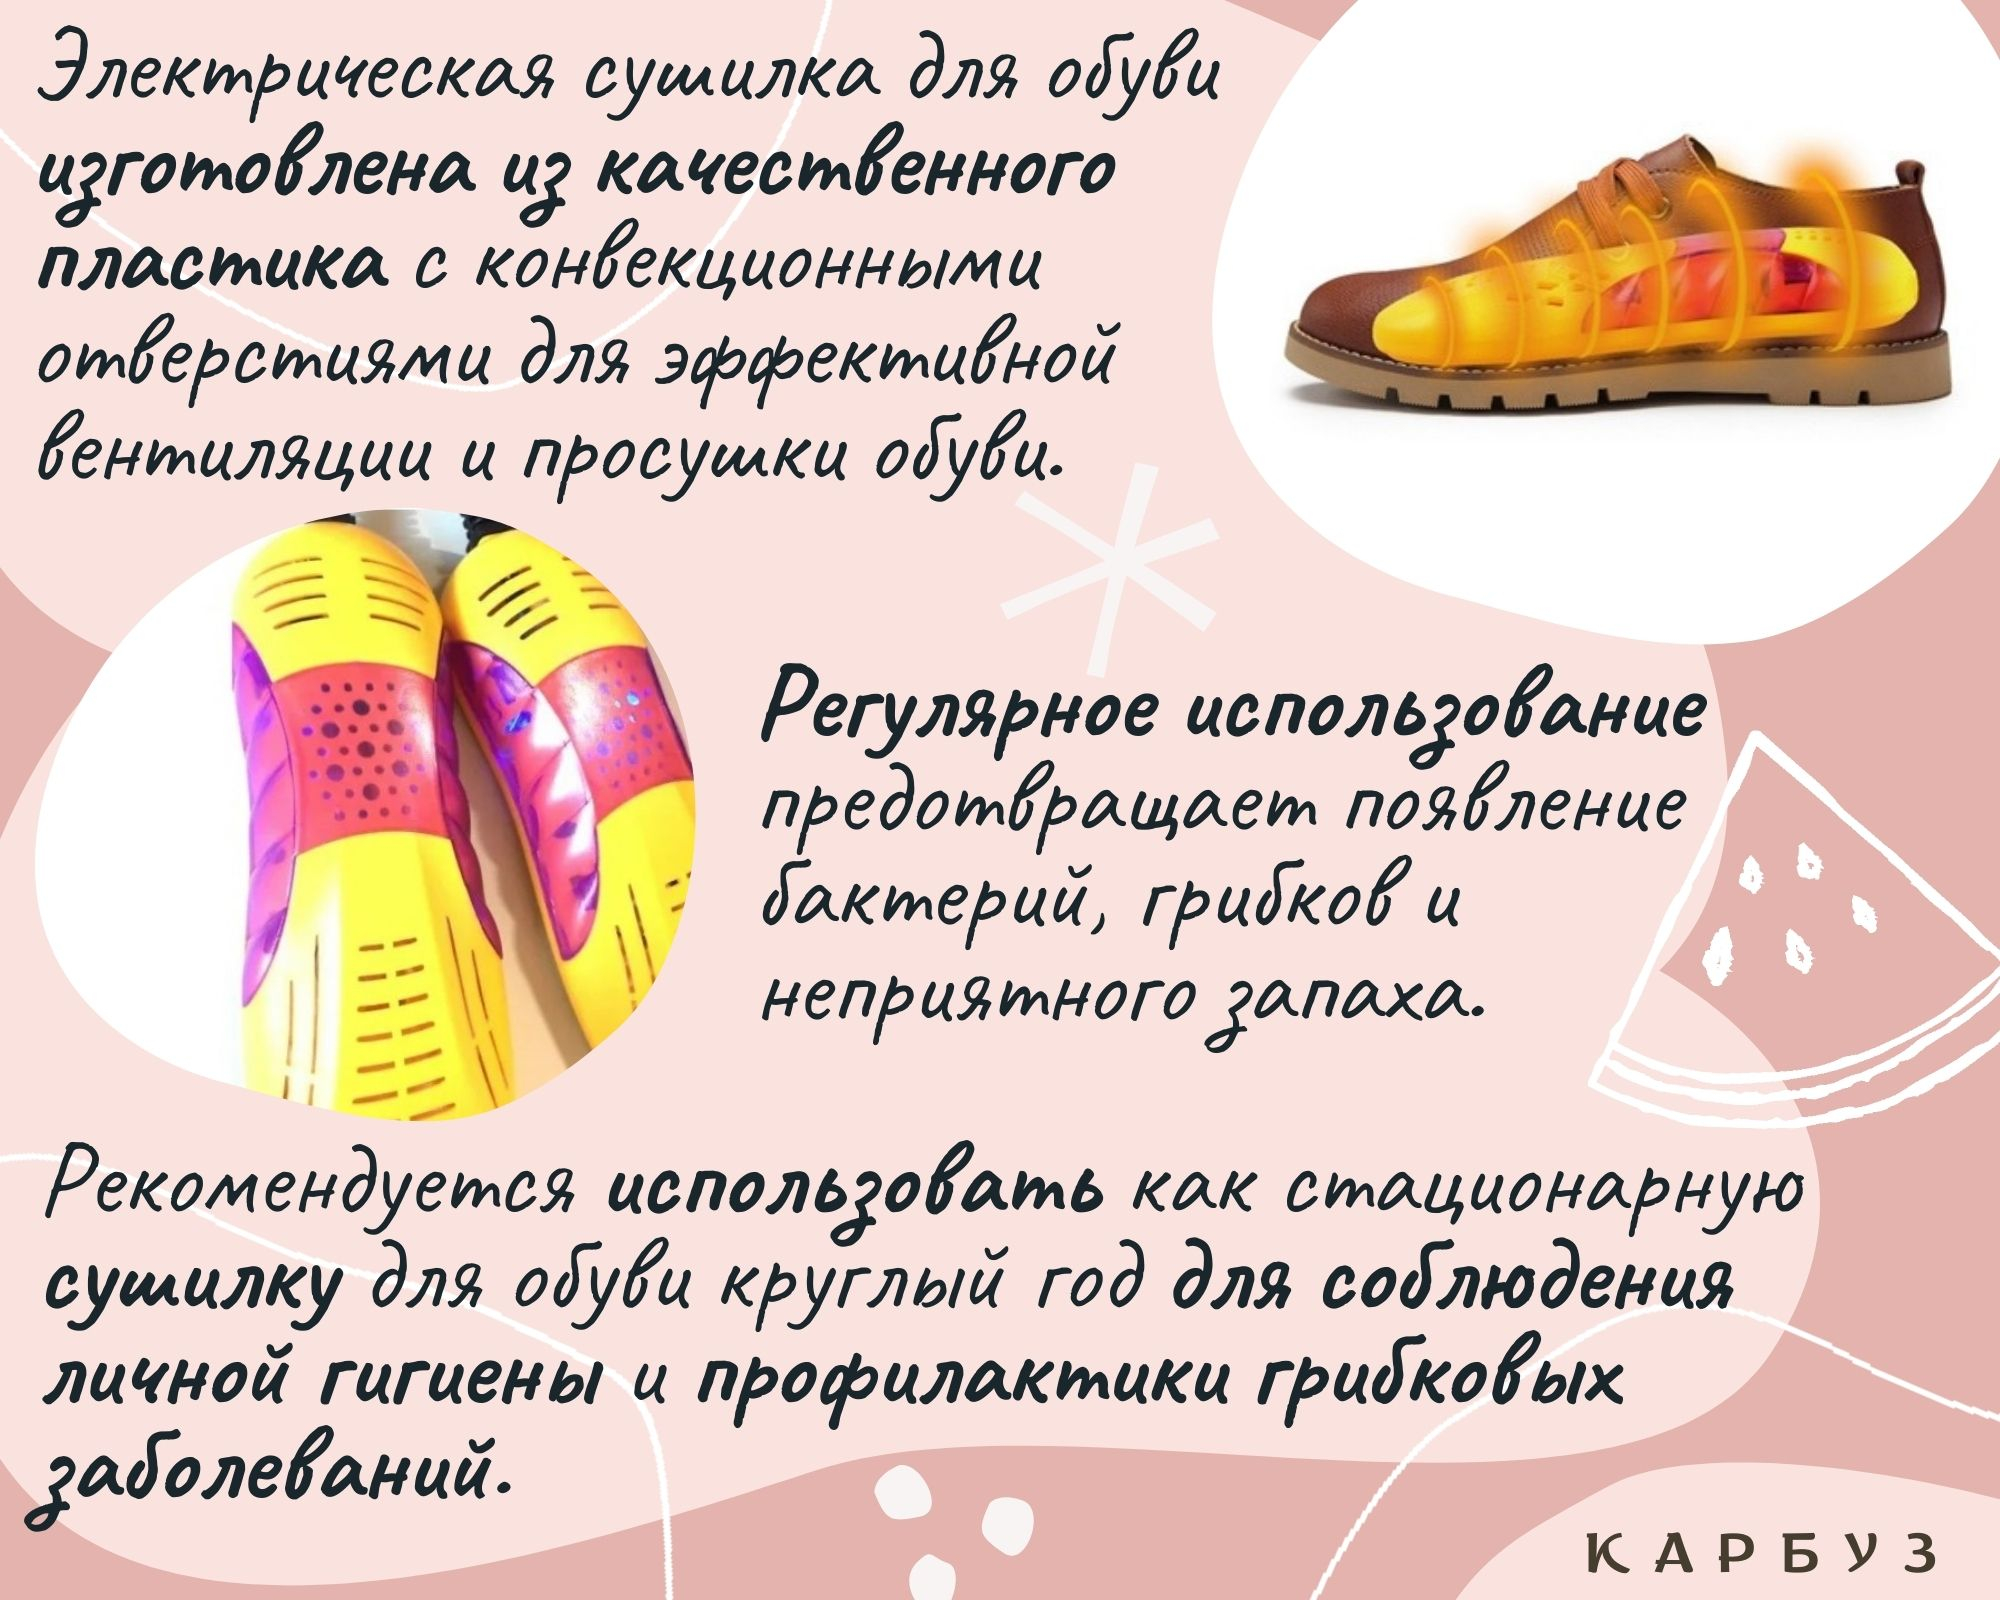 Особенности сушилок для обуви